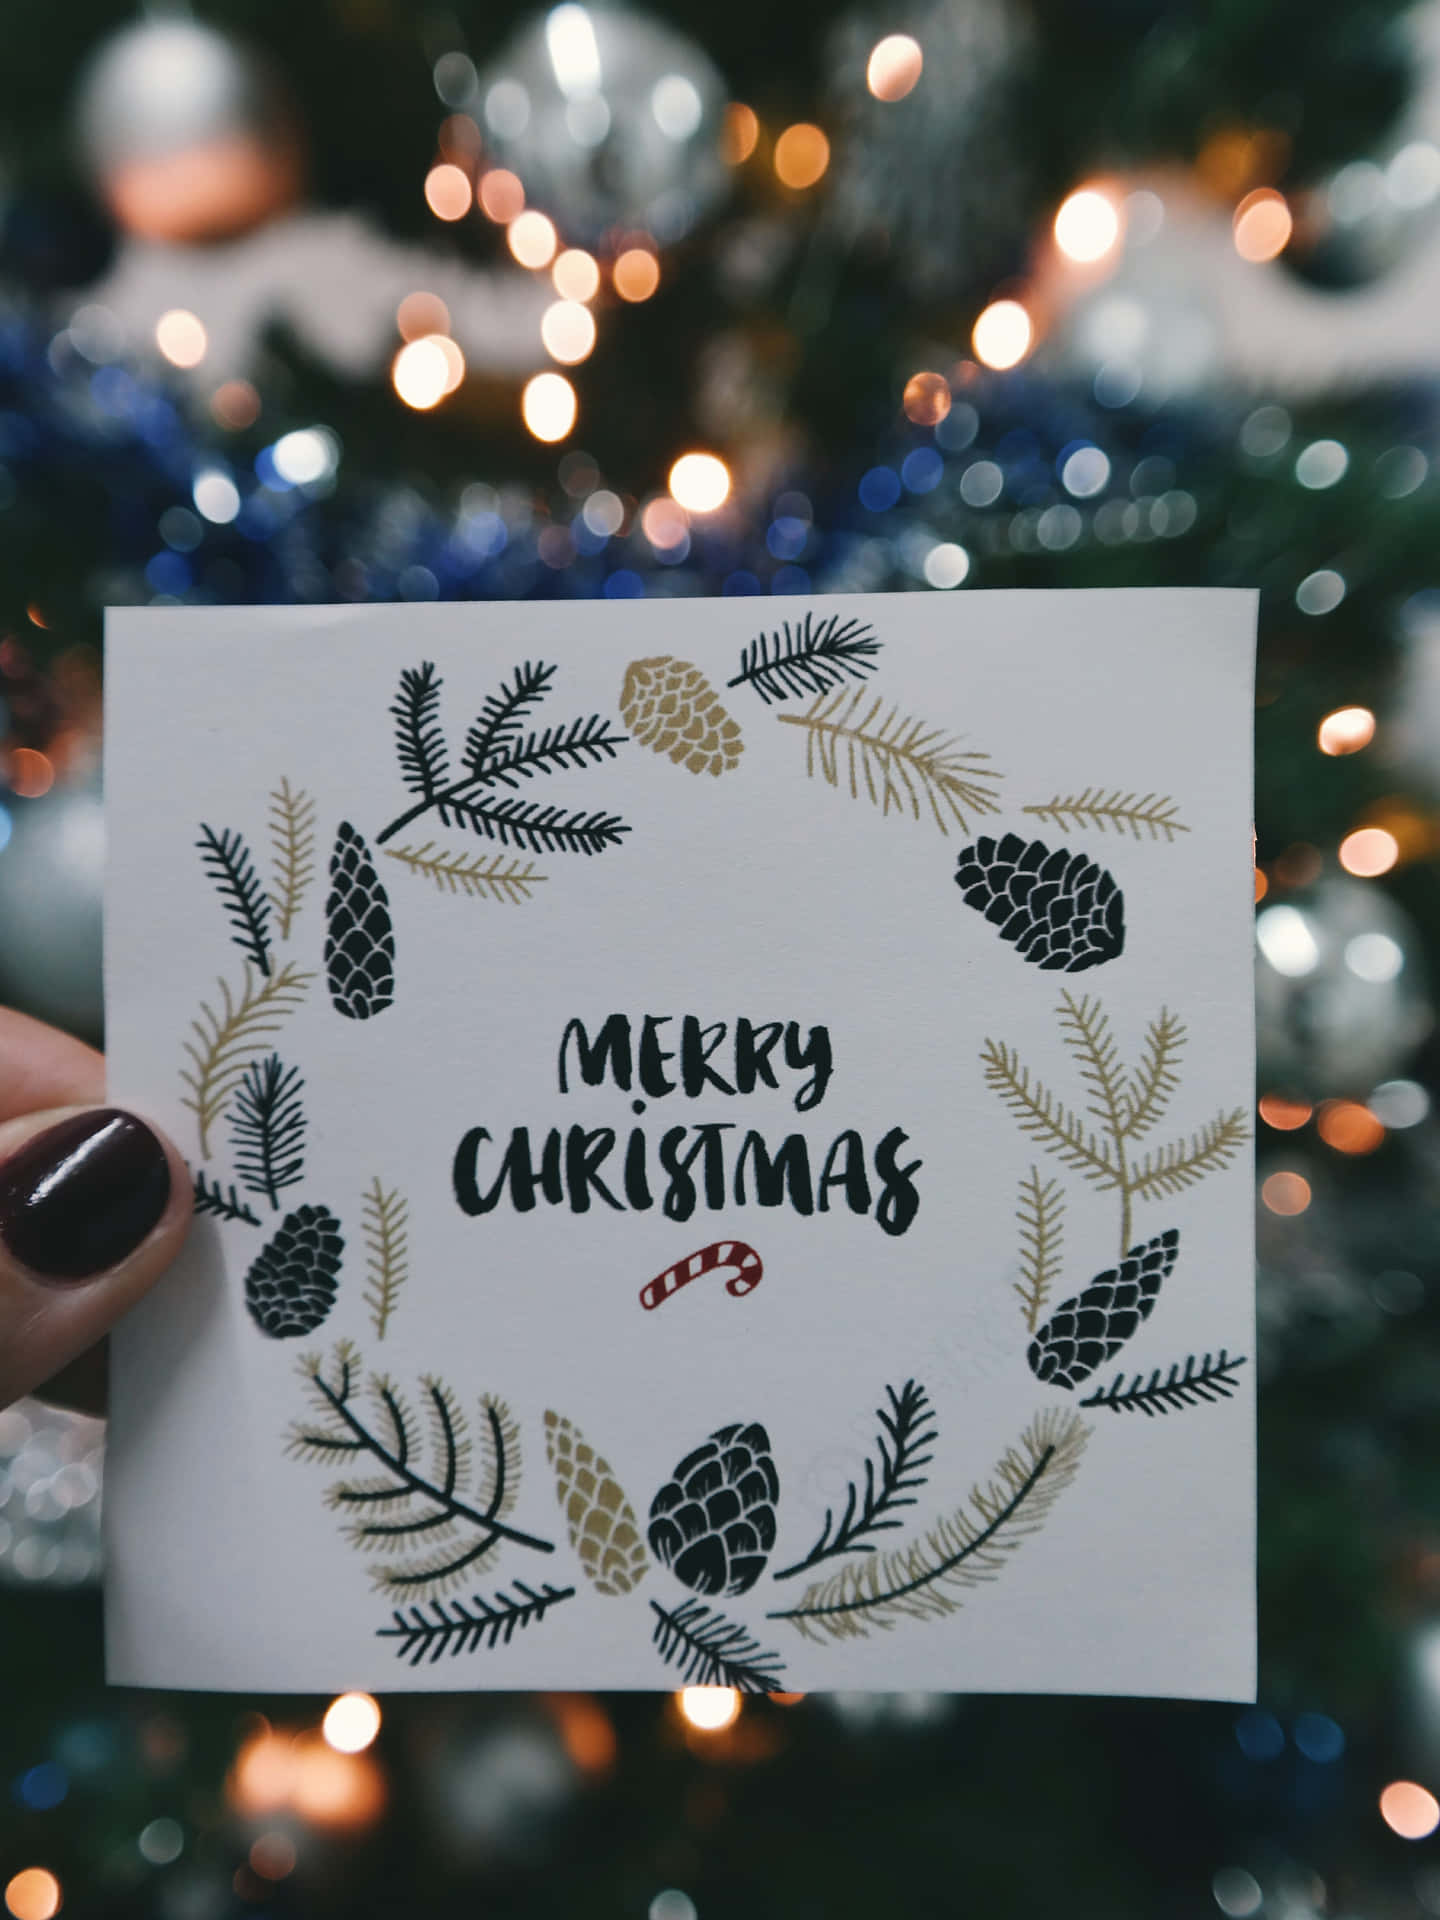 Verbreitensie Etwas Festliche Stimmung, Senden Sie Heute Eine Weihnachtskarte!